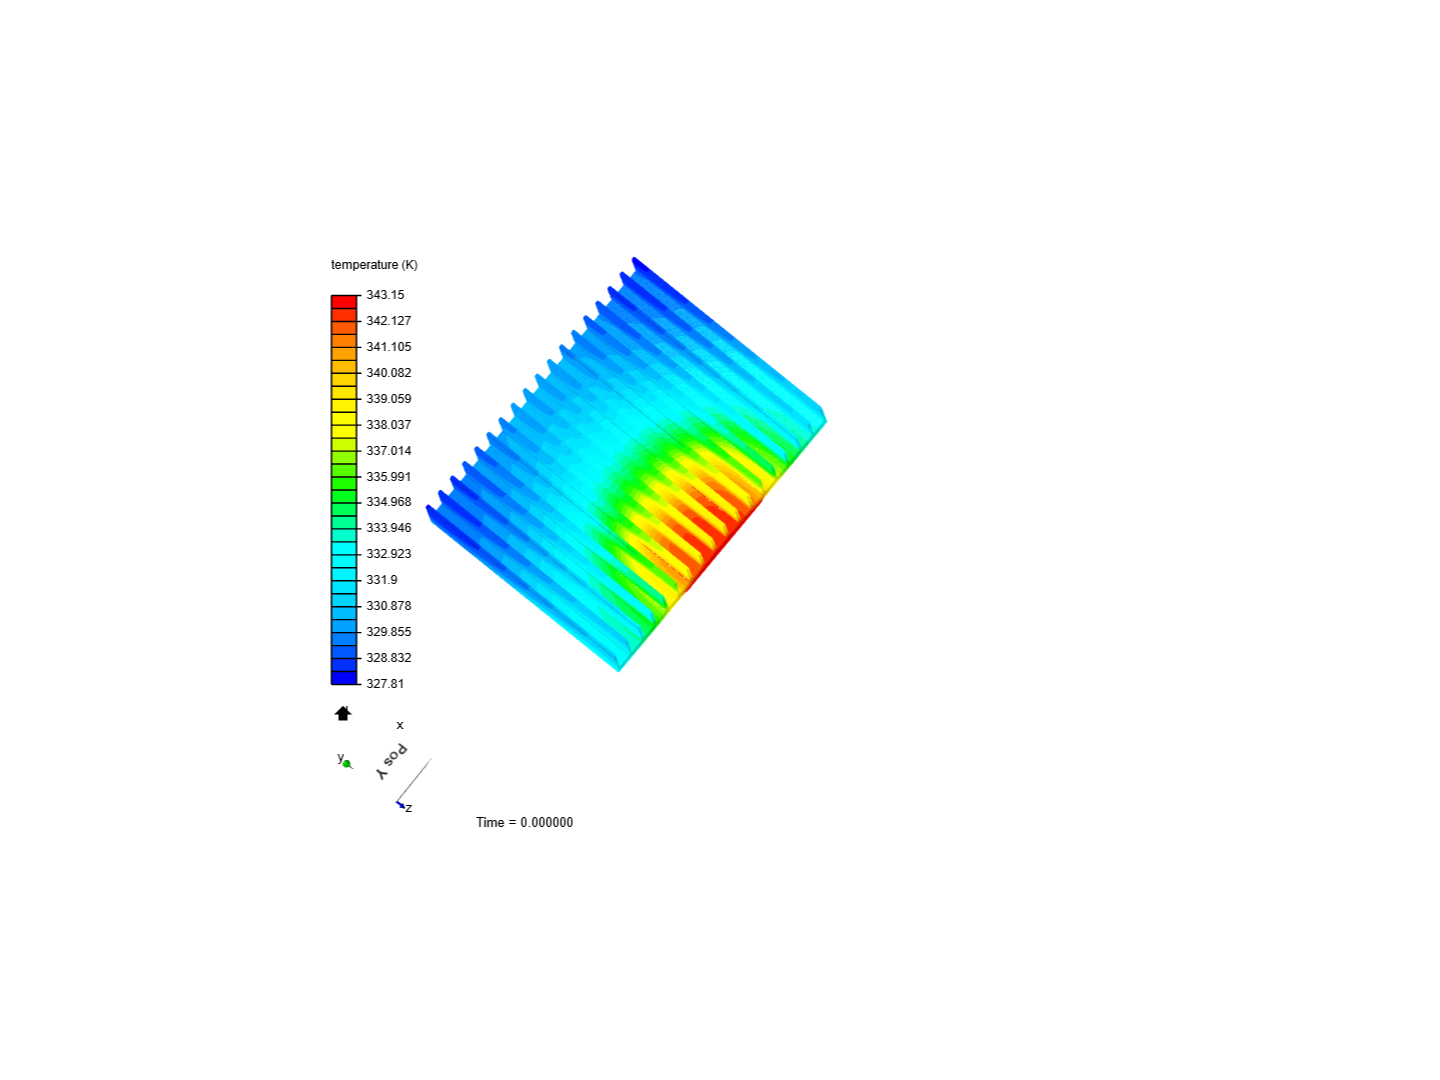 Tutorial: Heat Transfer in a Heat sink image